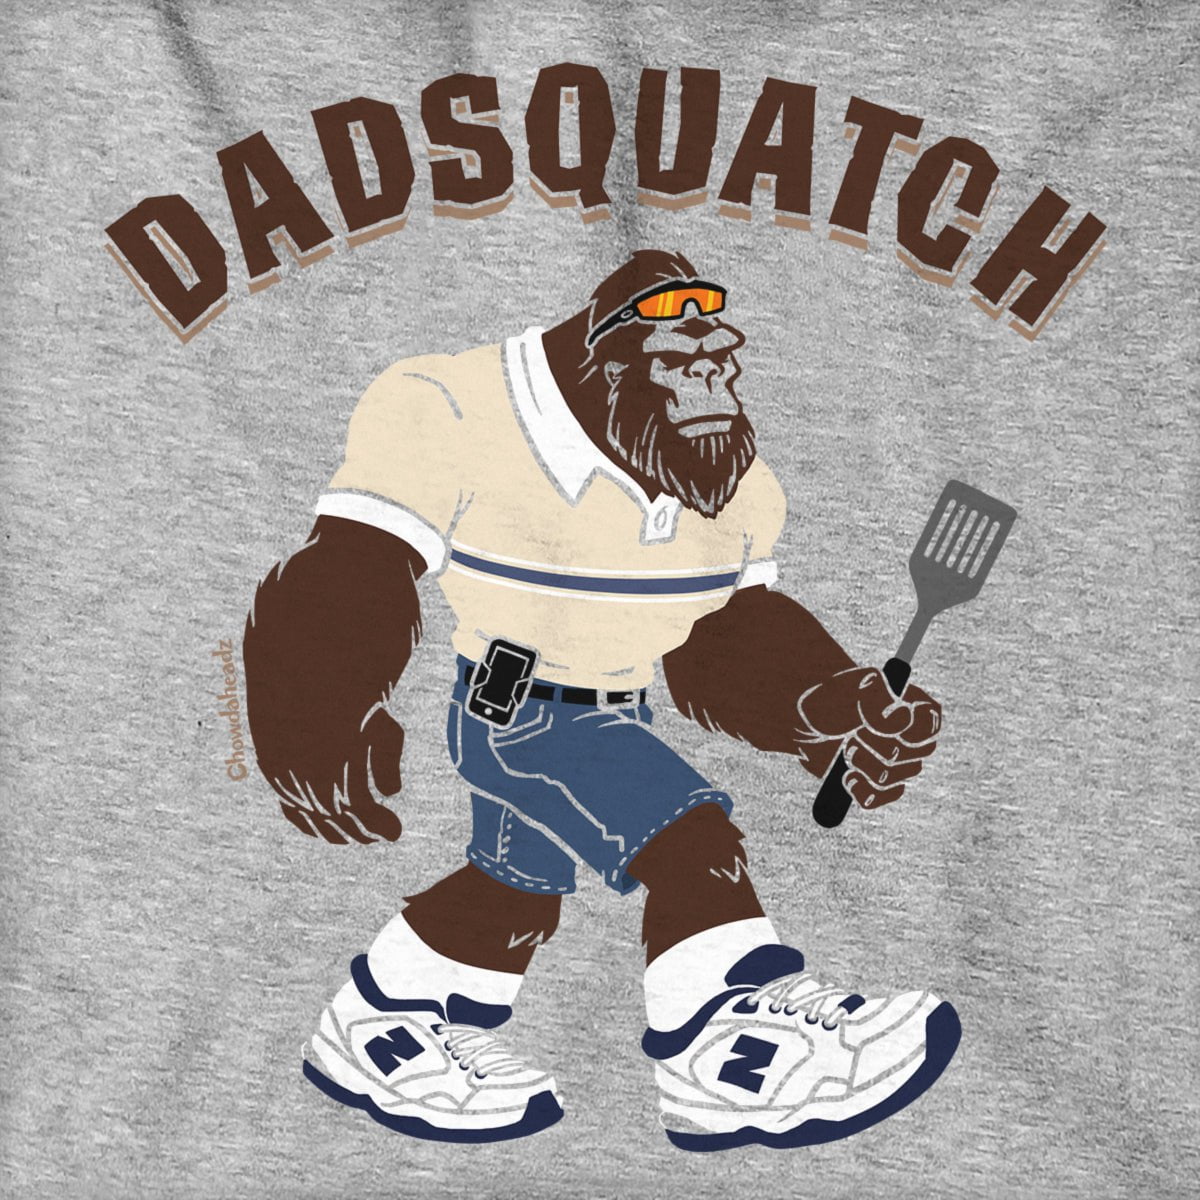 Dadsquatch Hoodie - Chowdaheadz